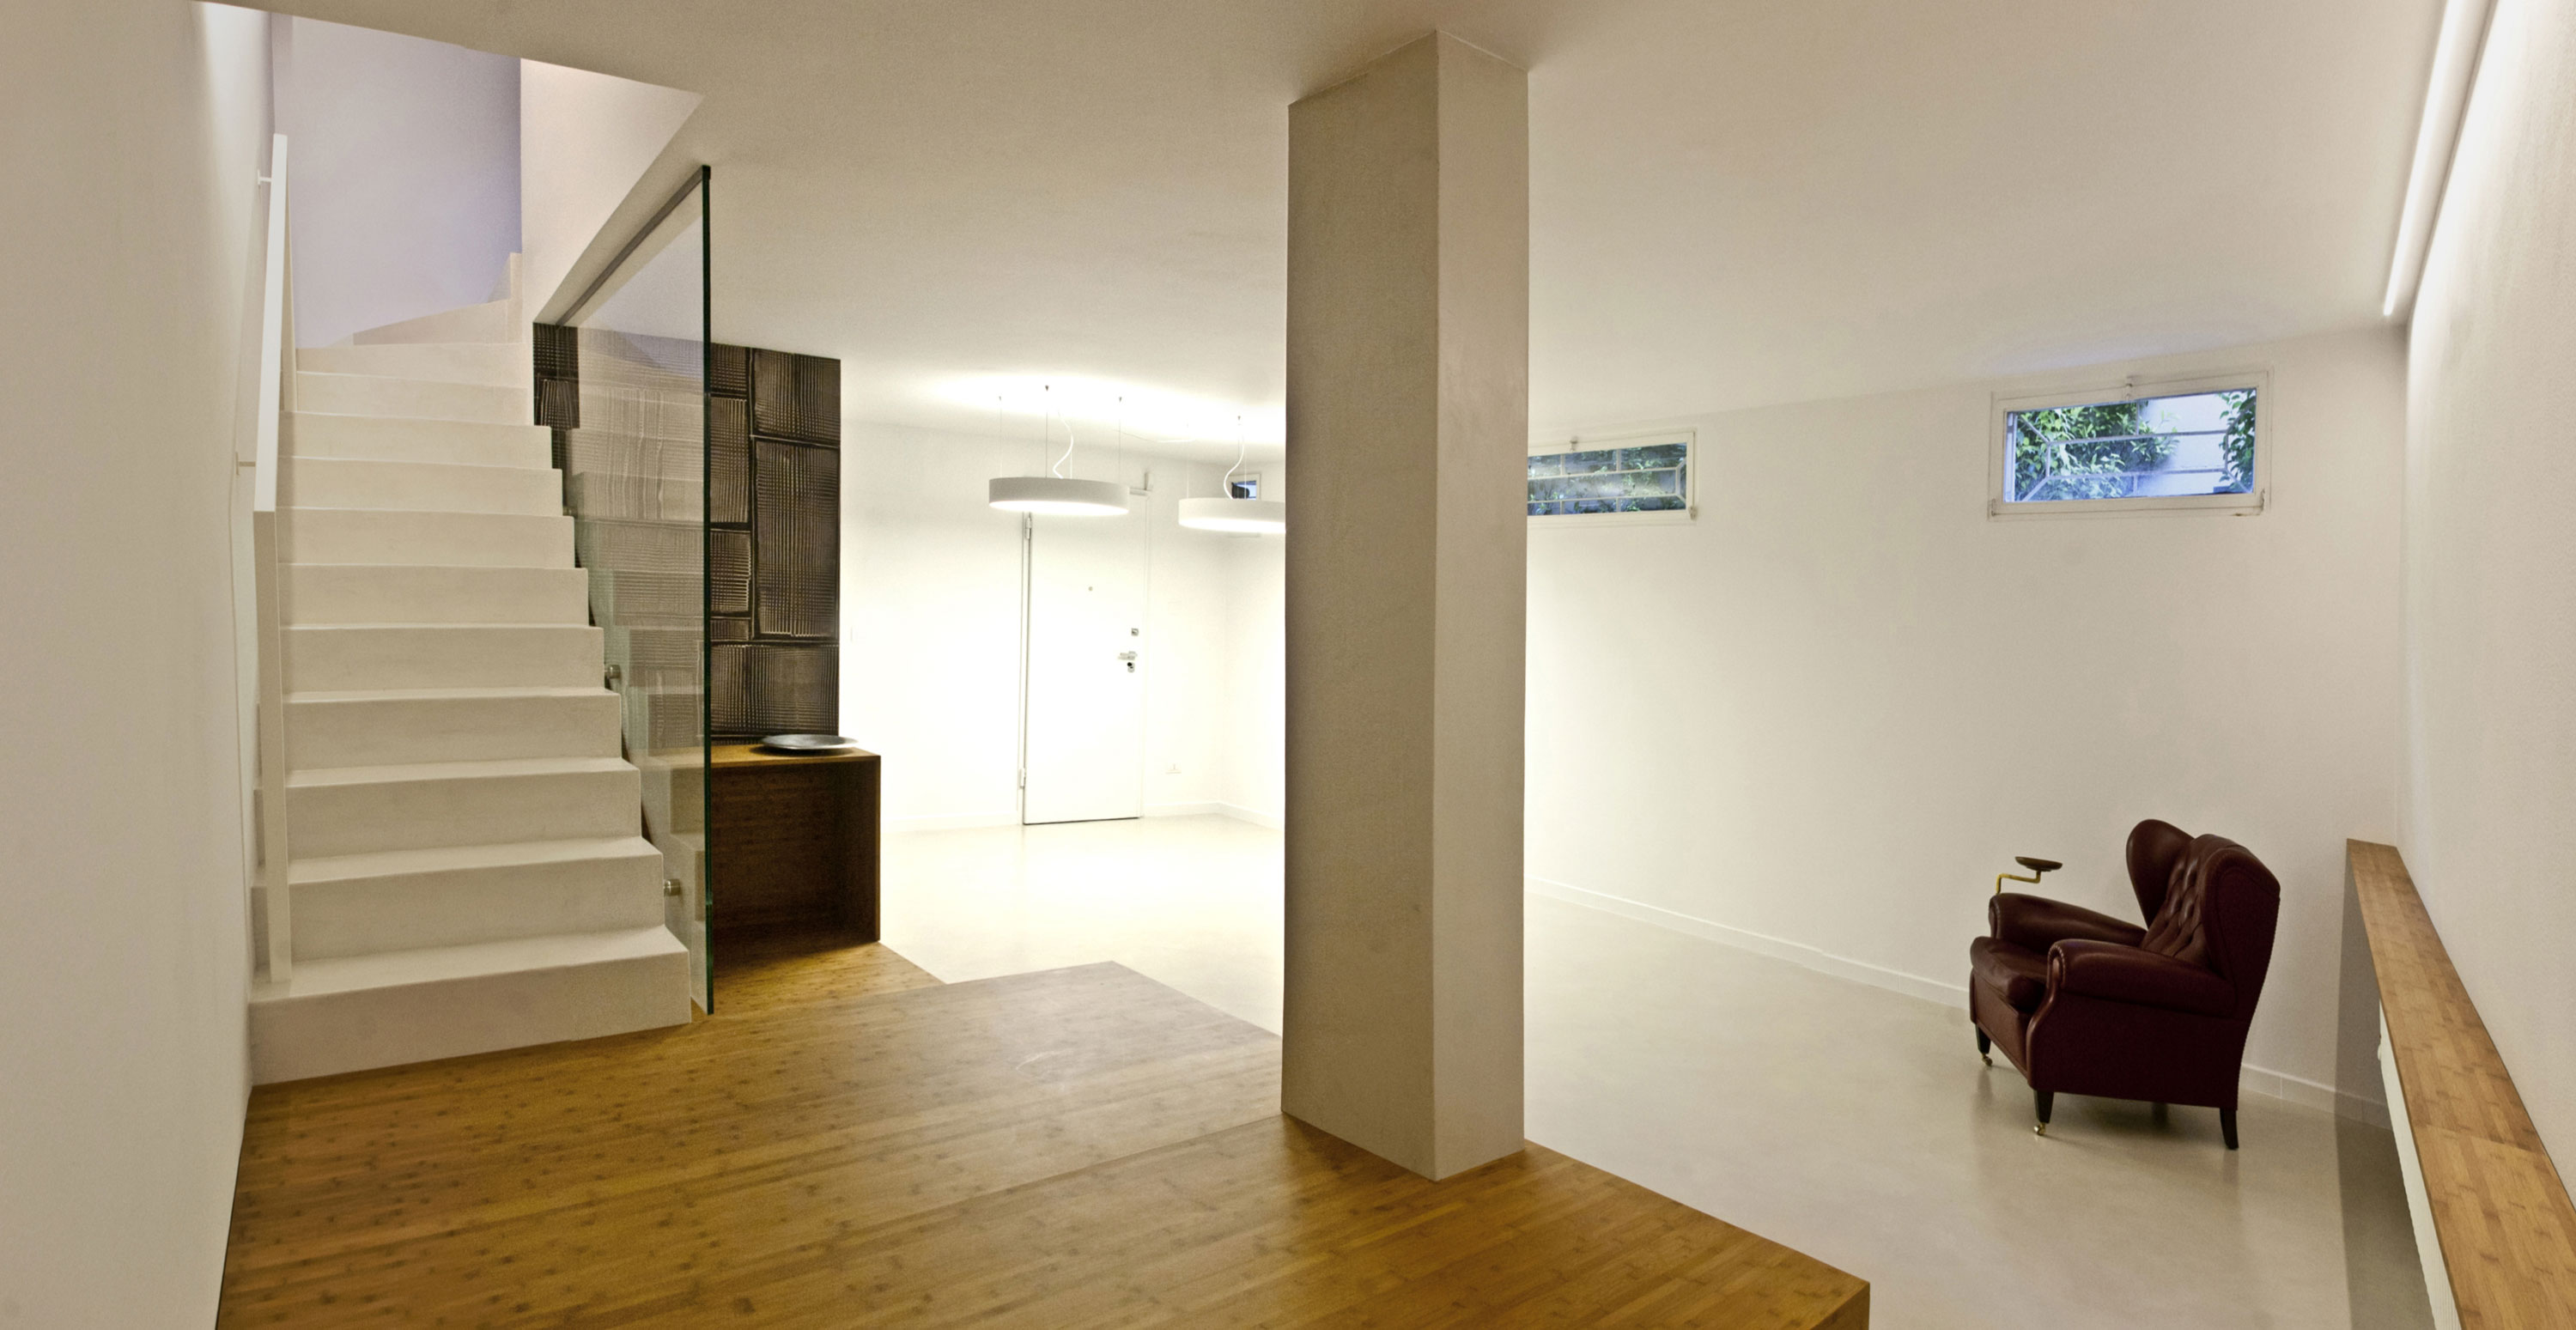 Как изменить интерьер дома? интересная реконструкция цокольного этажа от архитекторов msx2, монтелупо, флоренция, италия